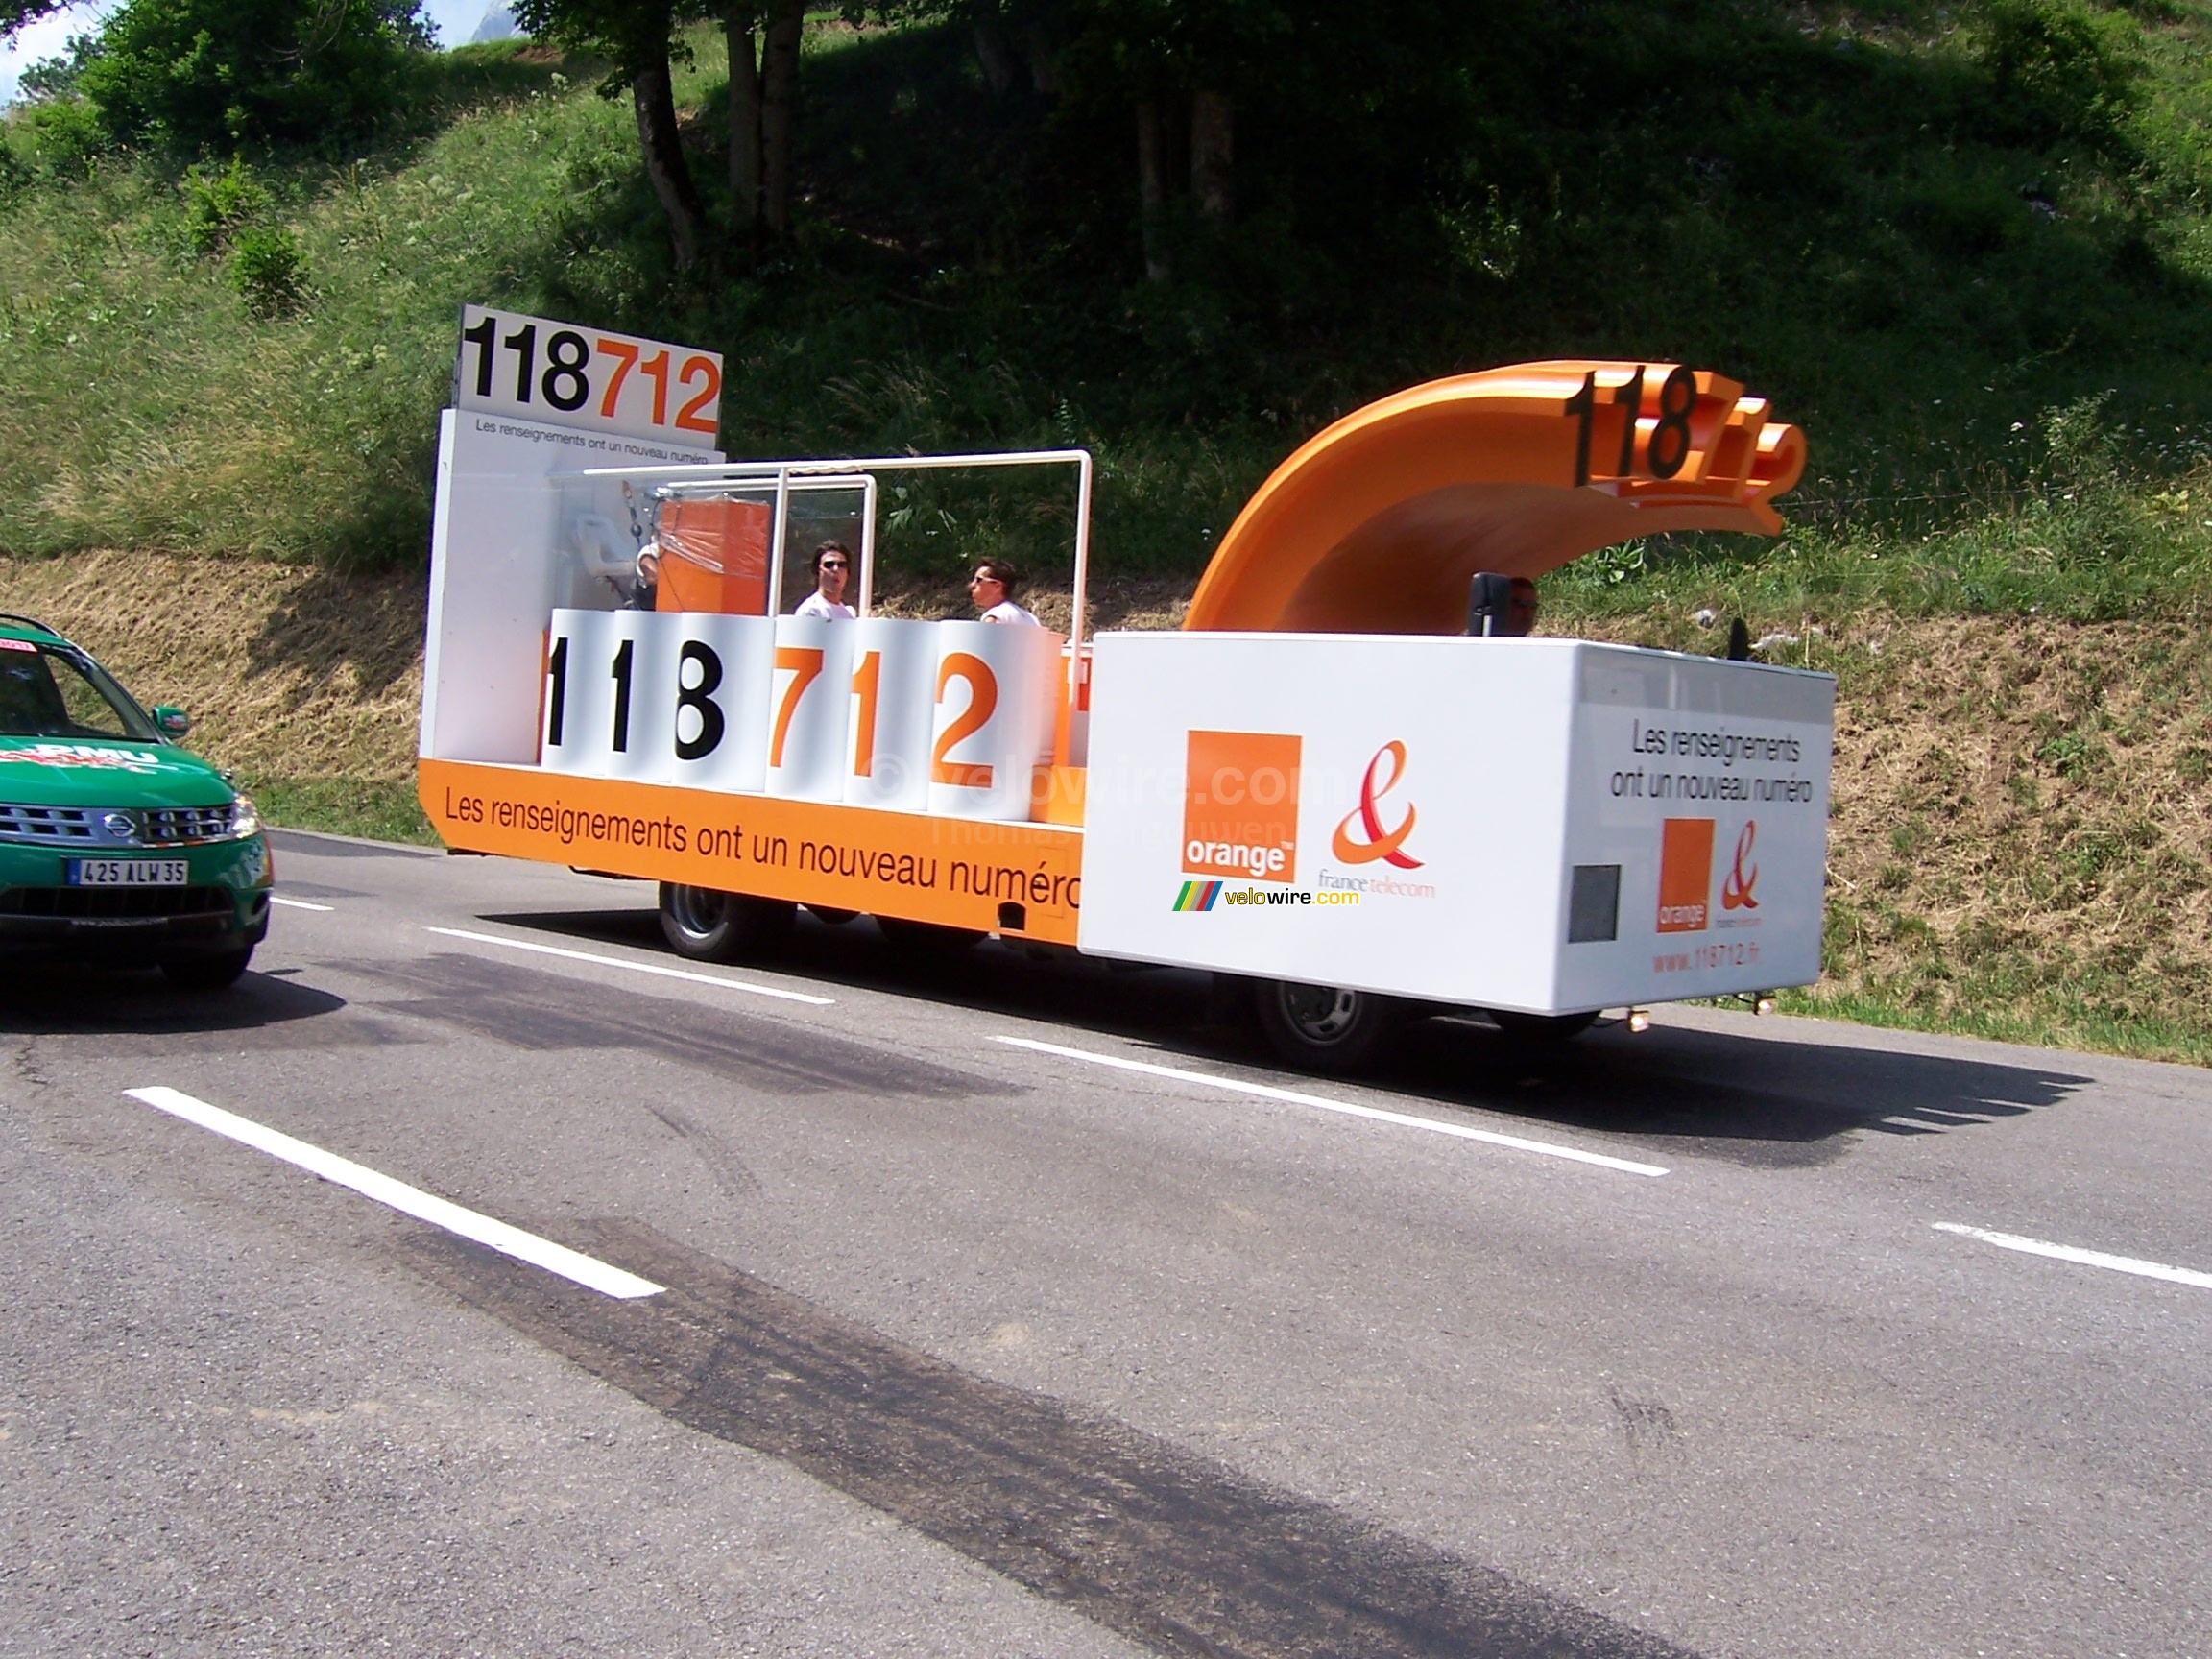 De 118 712 vrachtwagen van France Telecom / Orange - [1 dag in de reclamecaravaan van La Vache Qui Rit]